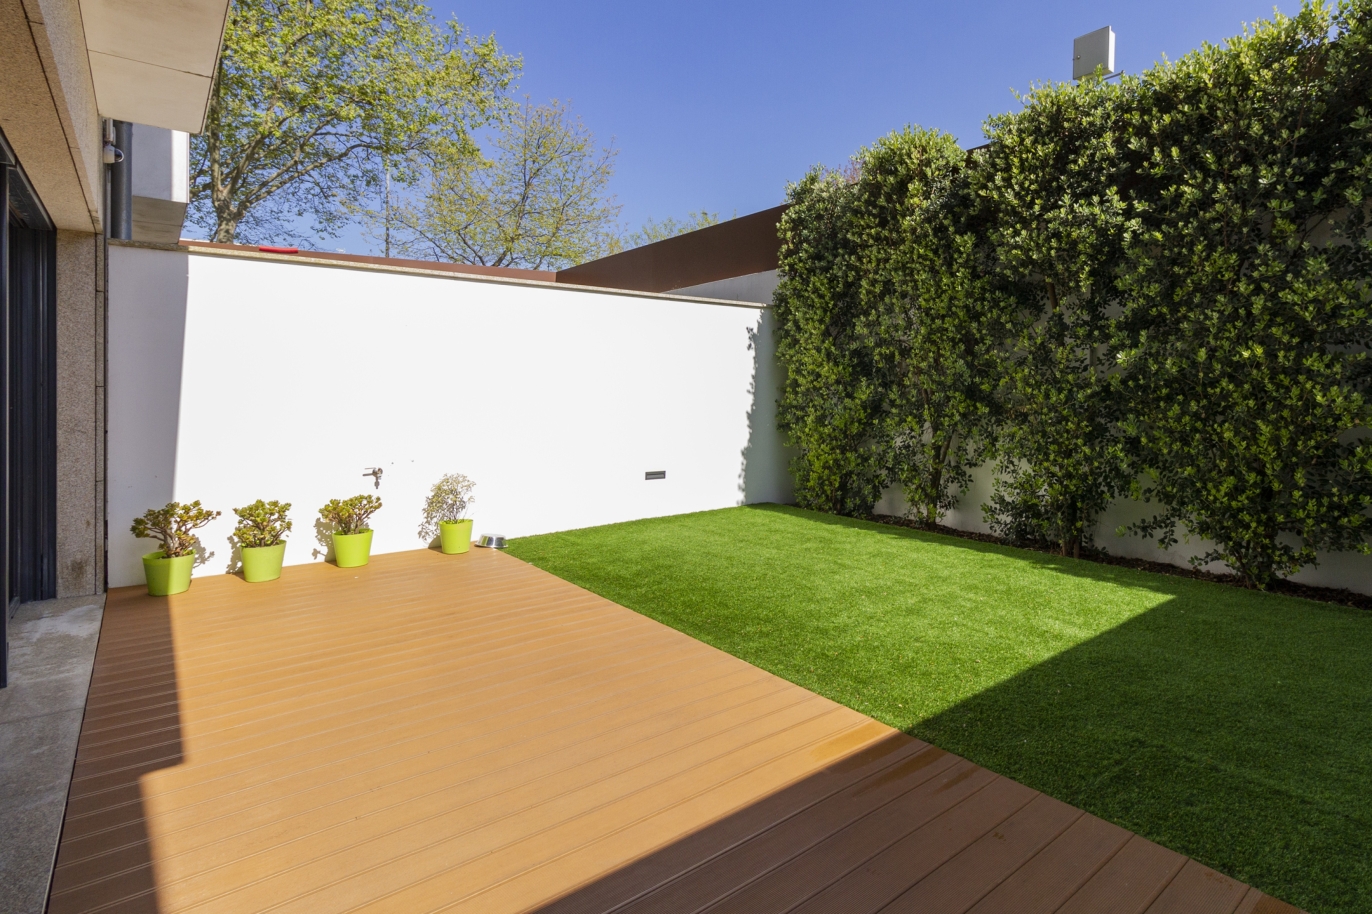 4 bedroom villa with garden, for sale, near CLIP, Porto, Portugal_224841